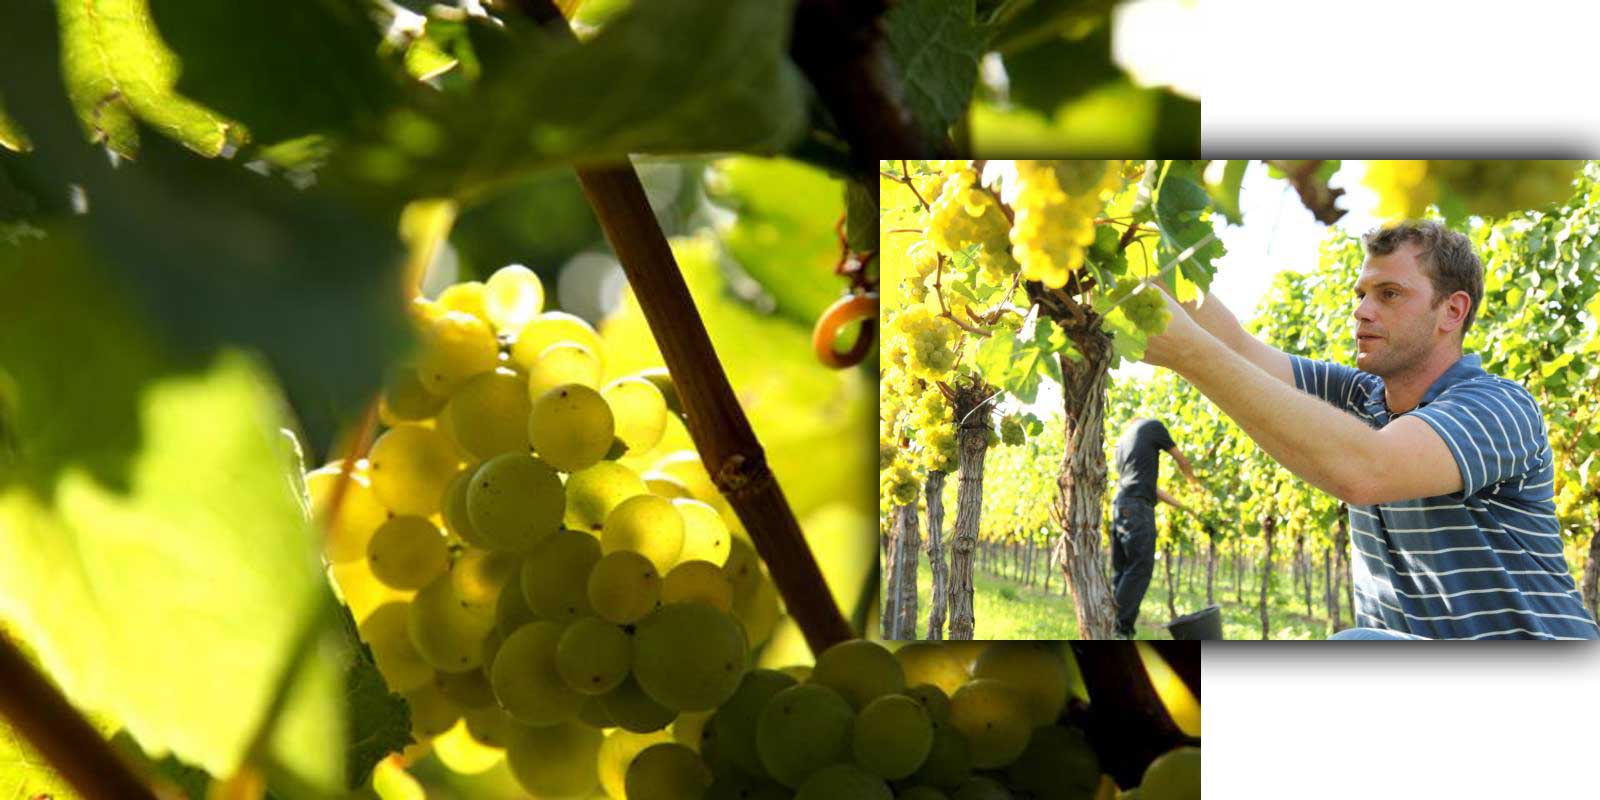 Vinarstvi Aloisiushof - Falc / vinarska oblast Alois Kiefer Rodina Kieferu pestovala vino ve Falci od 17. stoleti. Alois Kiefer zalozil v roce 1950 vinarstvi Aloisiushof, ktere nyni vedou jeho tri synove. Ekologicke vinarstvi, pecliva prace ve sklepe zohlednujici terroirove vlastnosti vin a neustala kontrola kvality jsou zarukou vysoke kvality vin Kiefer`s.